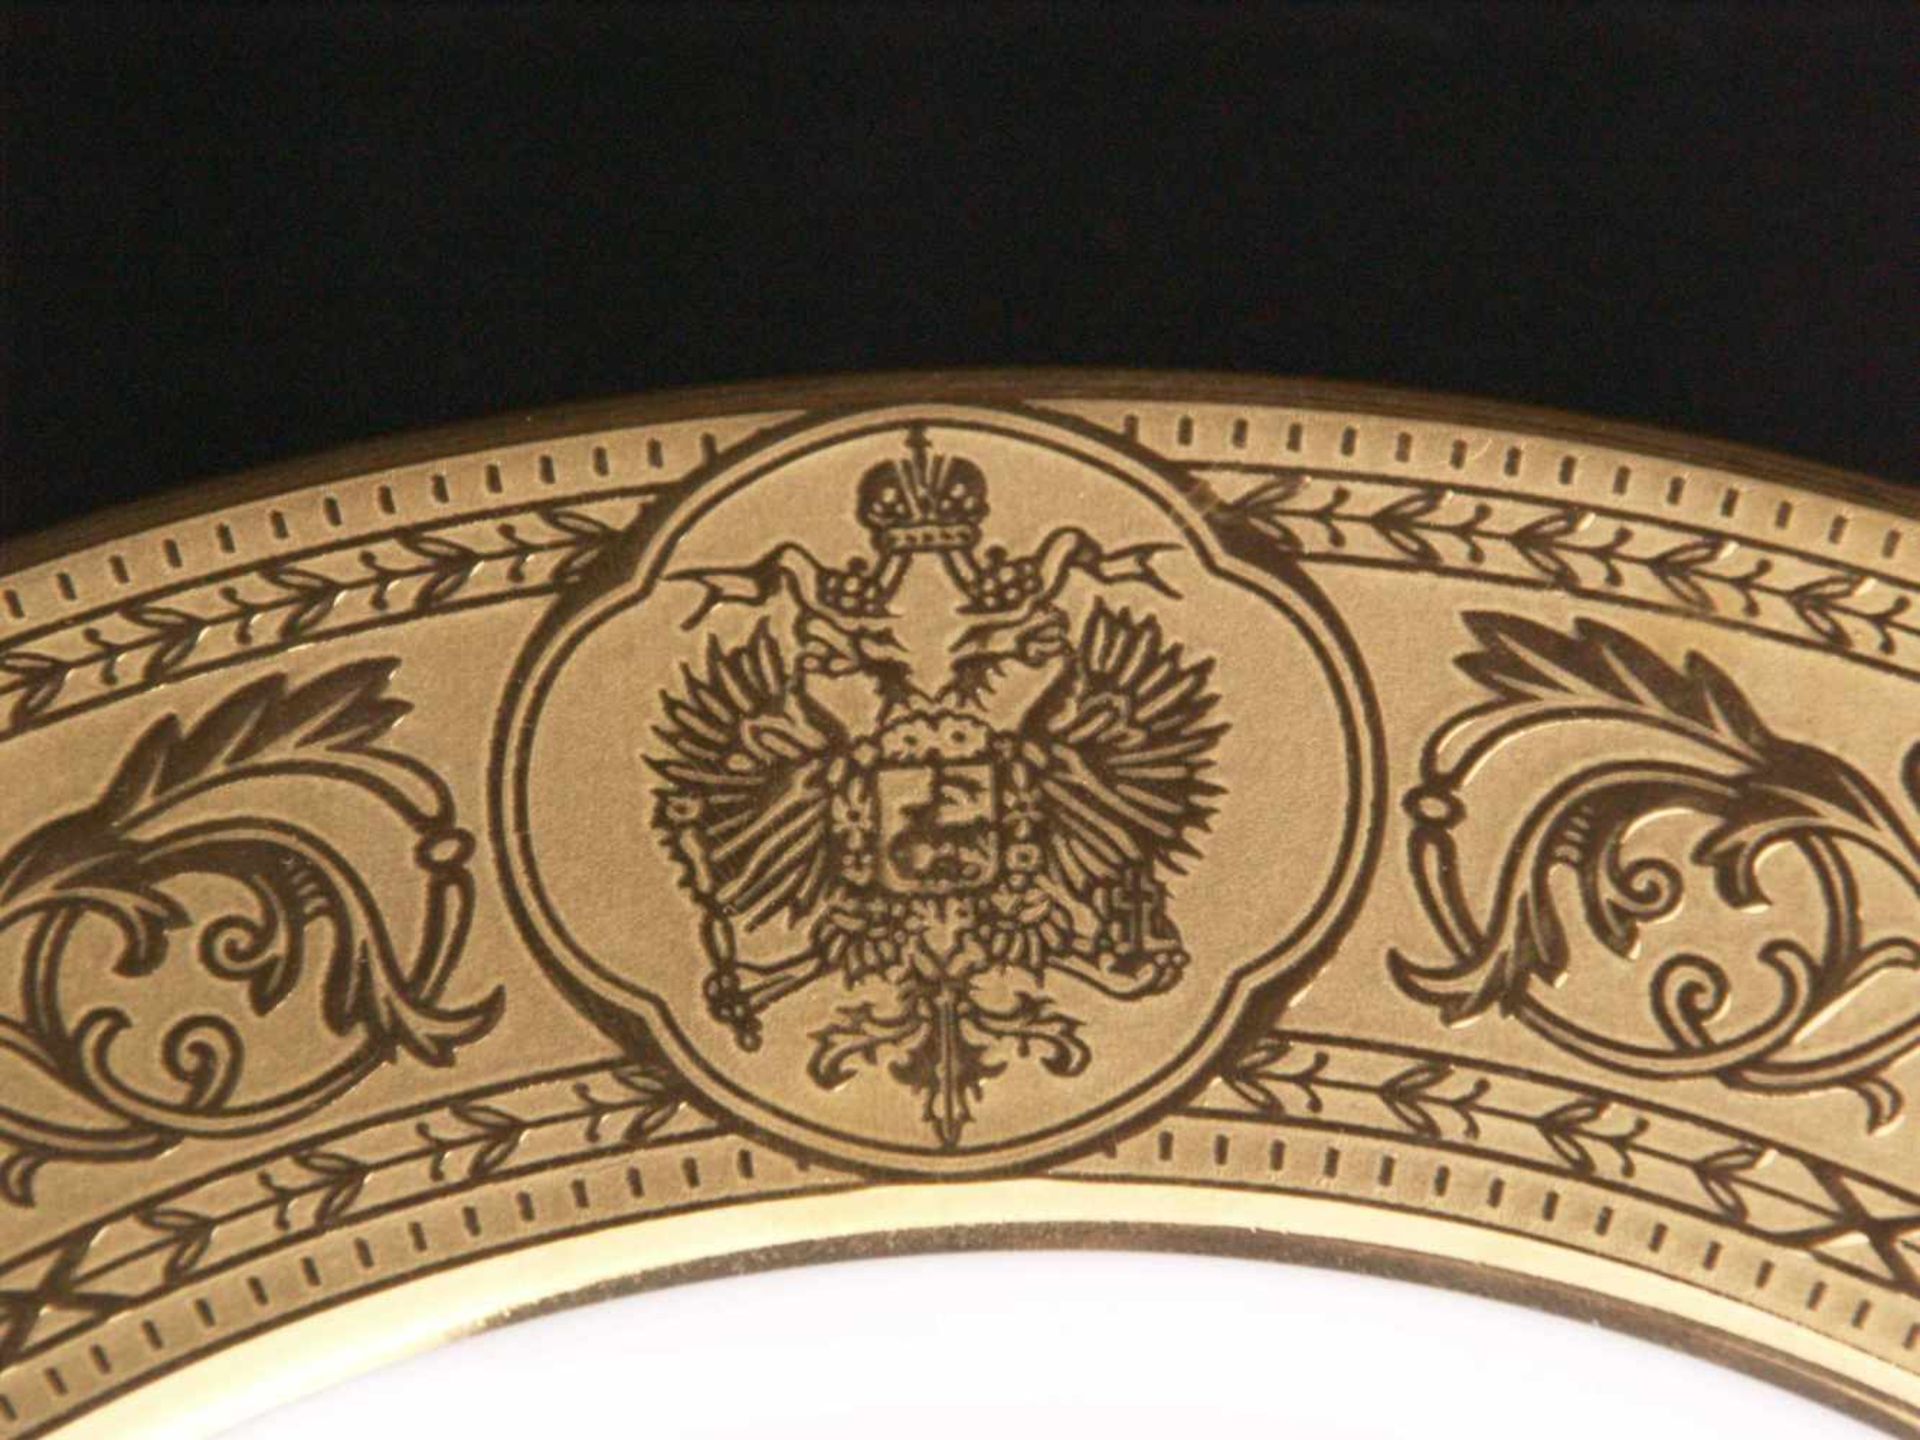 Zierteller - Hoechst, blaue Radmarke, 20.Jh., aus der Serie Eremitage, Ätzgoldfahne, im Spiegel - Bild 5 aus 7